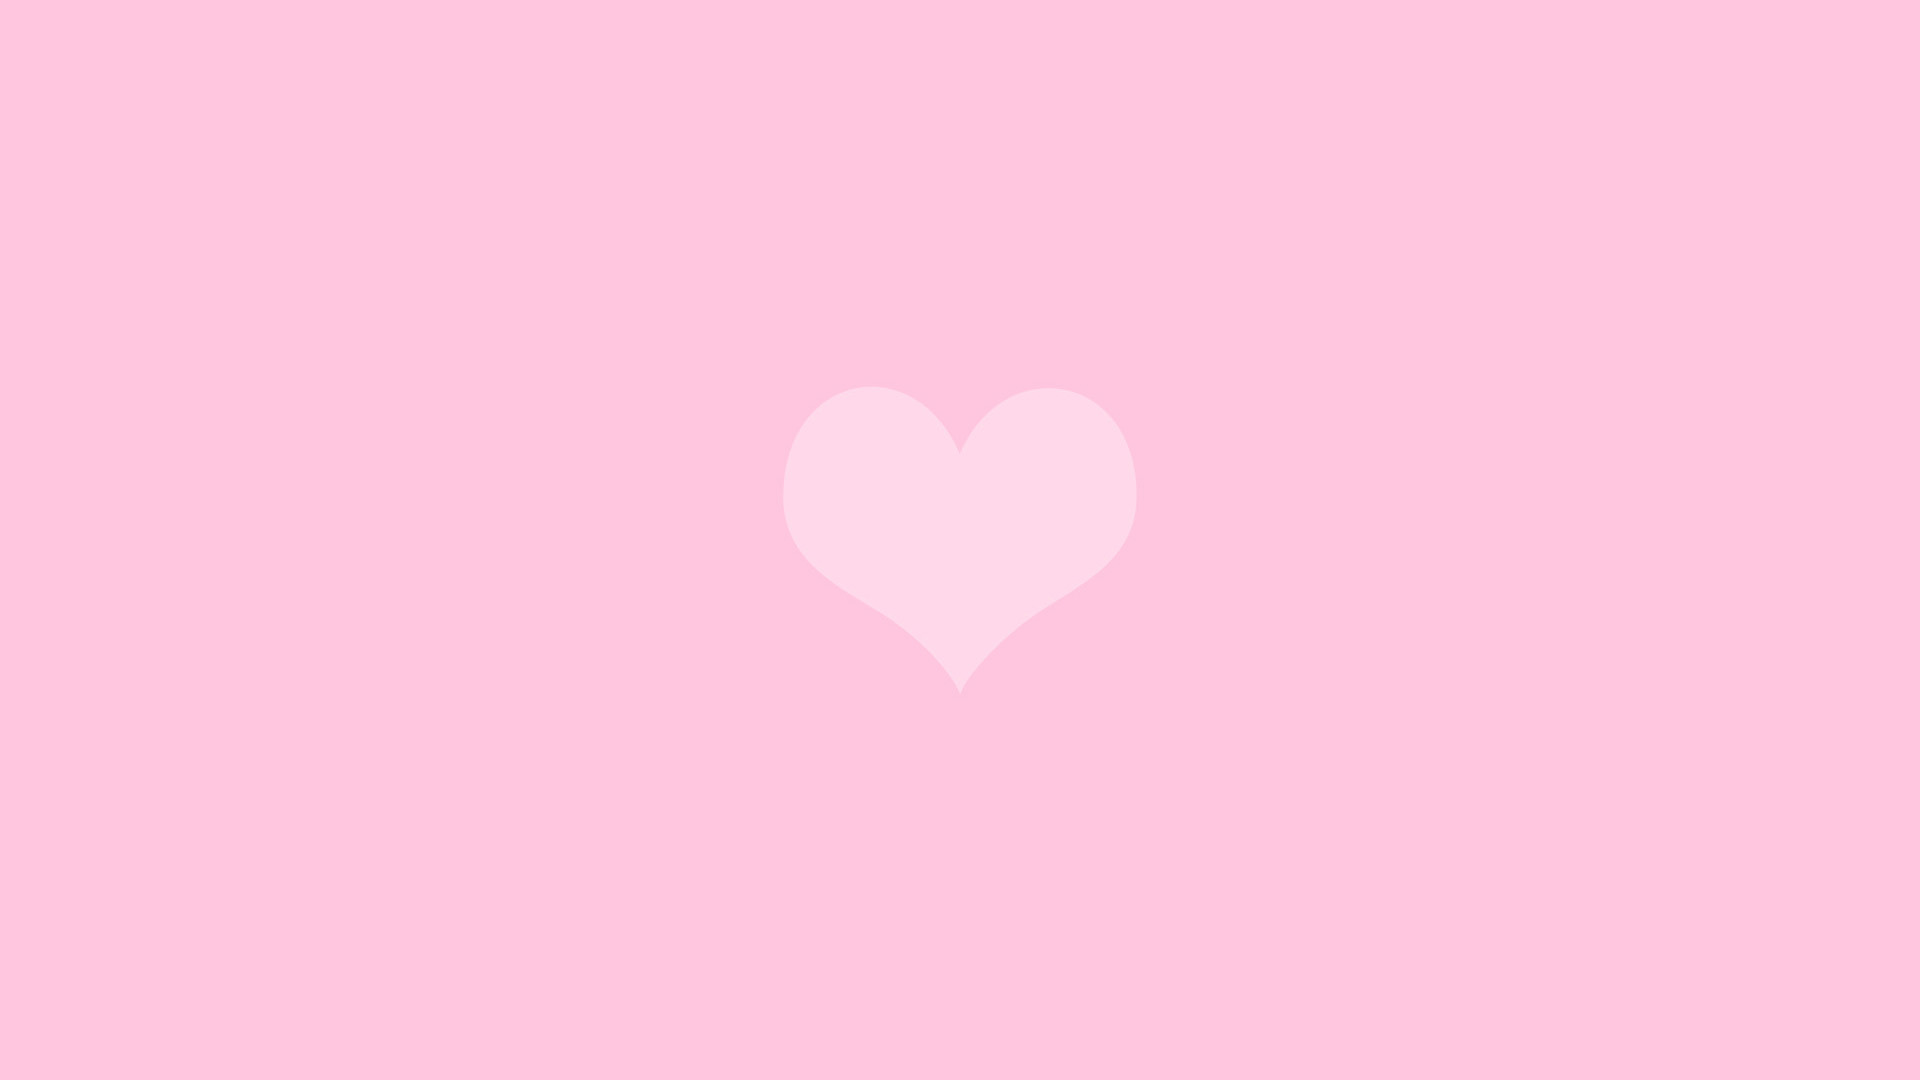 Non-mainstream pink heart wallpaper